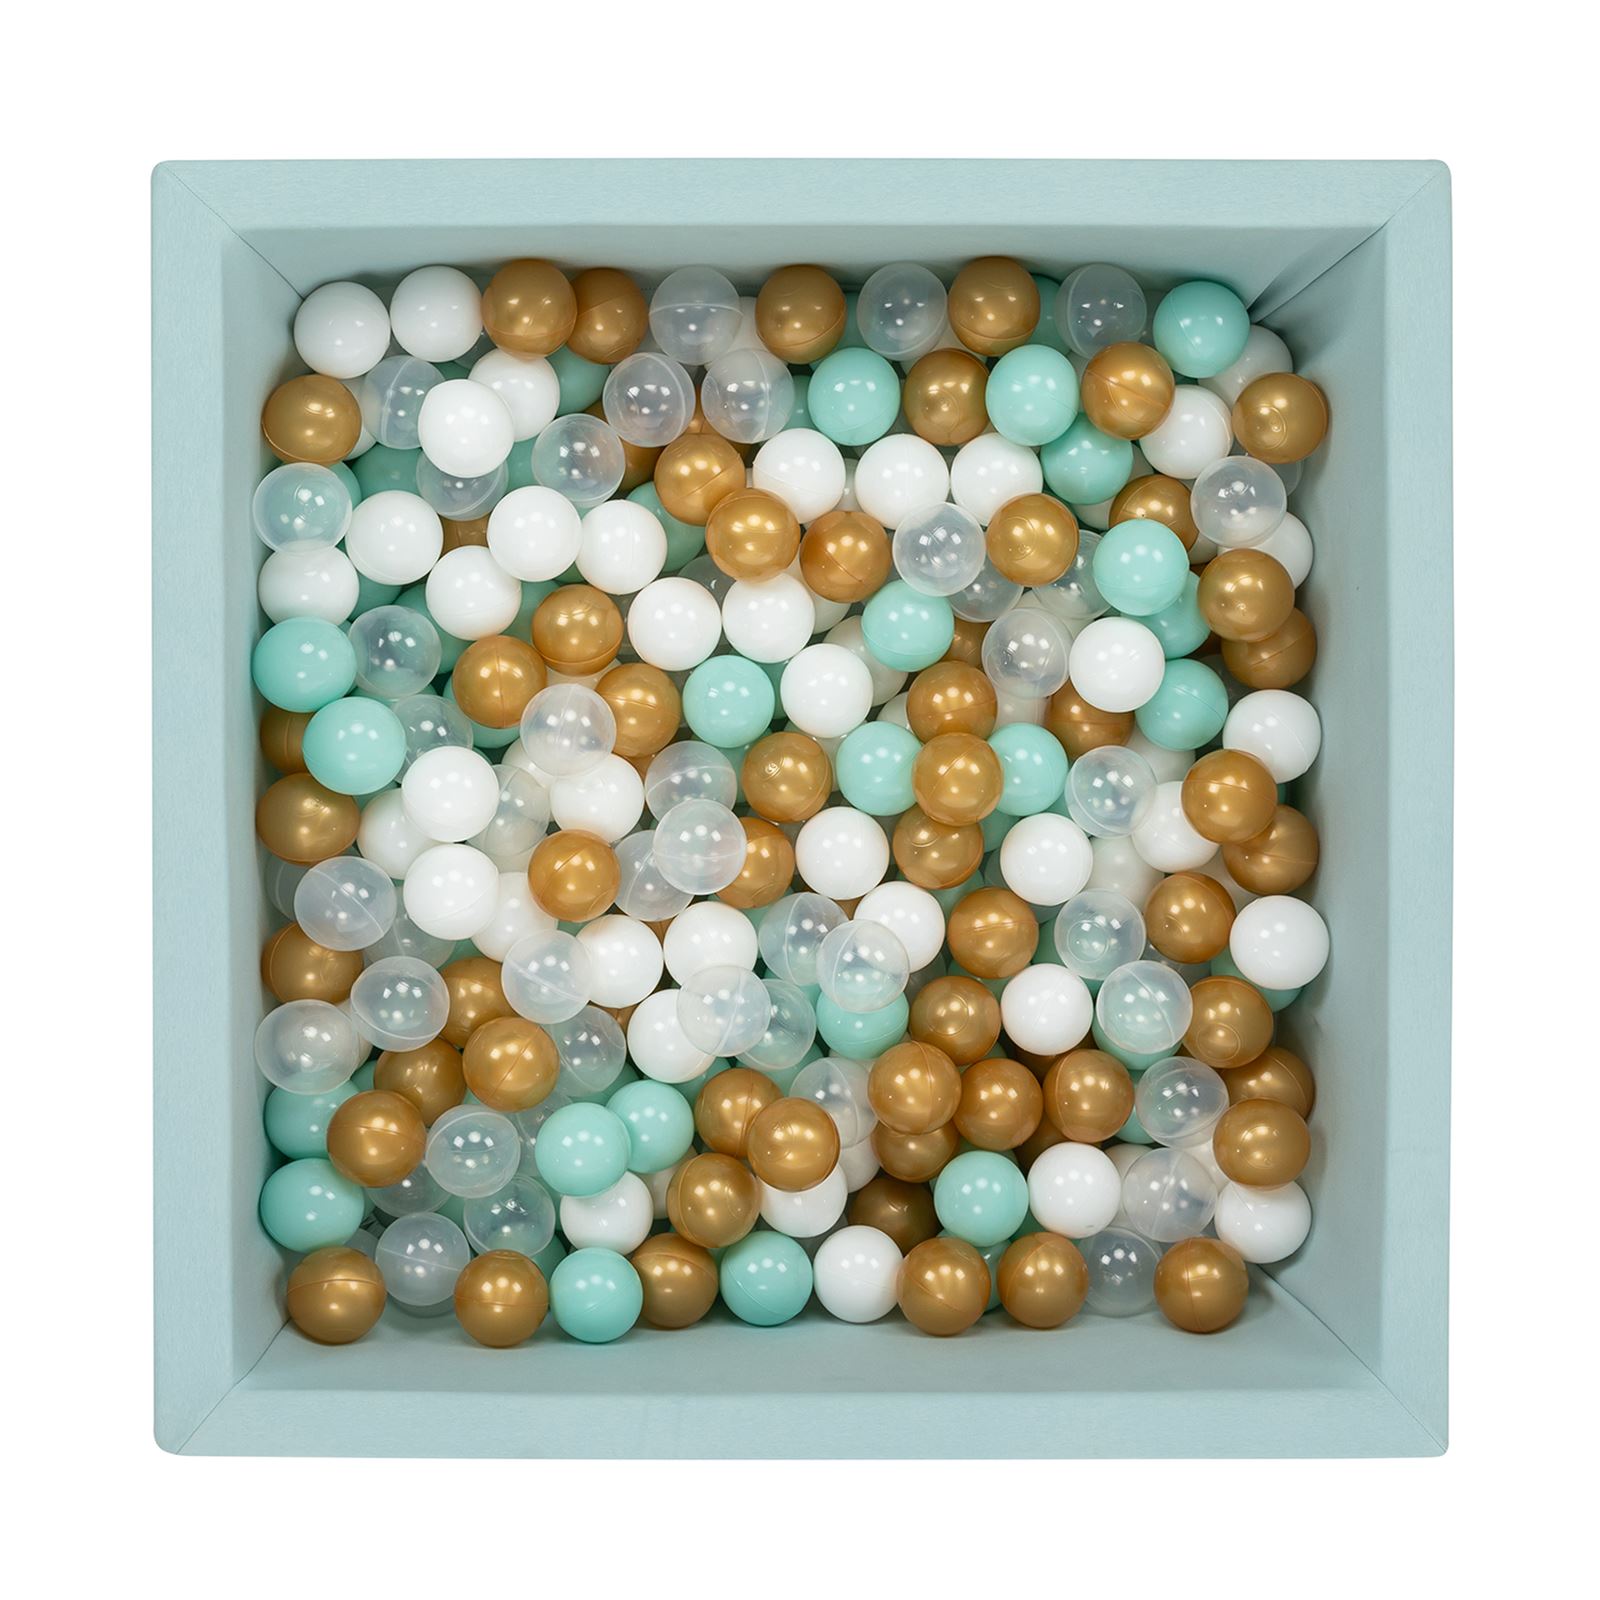 Wellgro Bubble Pops Mint Kare Top Havuzu ve Havuz Topları Mint/Beyaz/Şeffaf/Gold